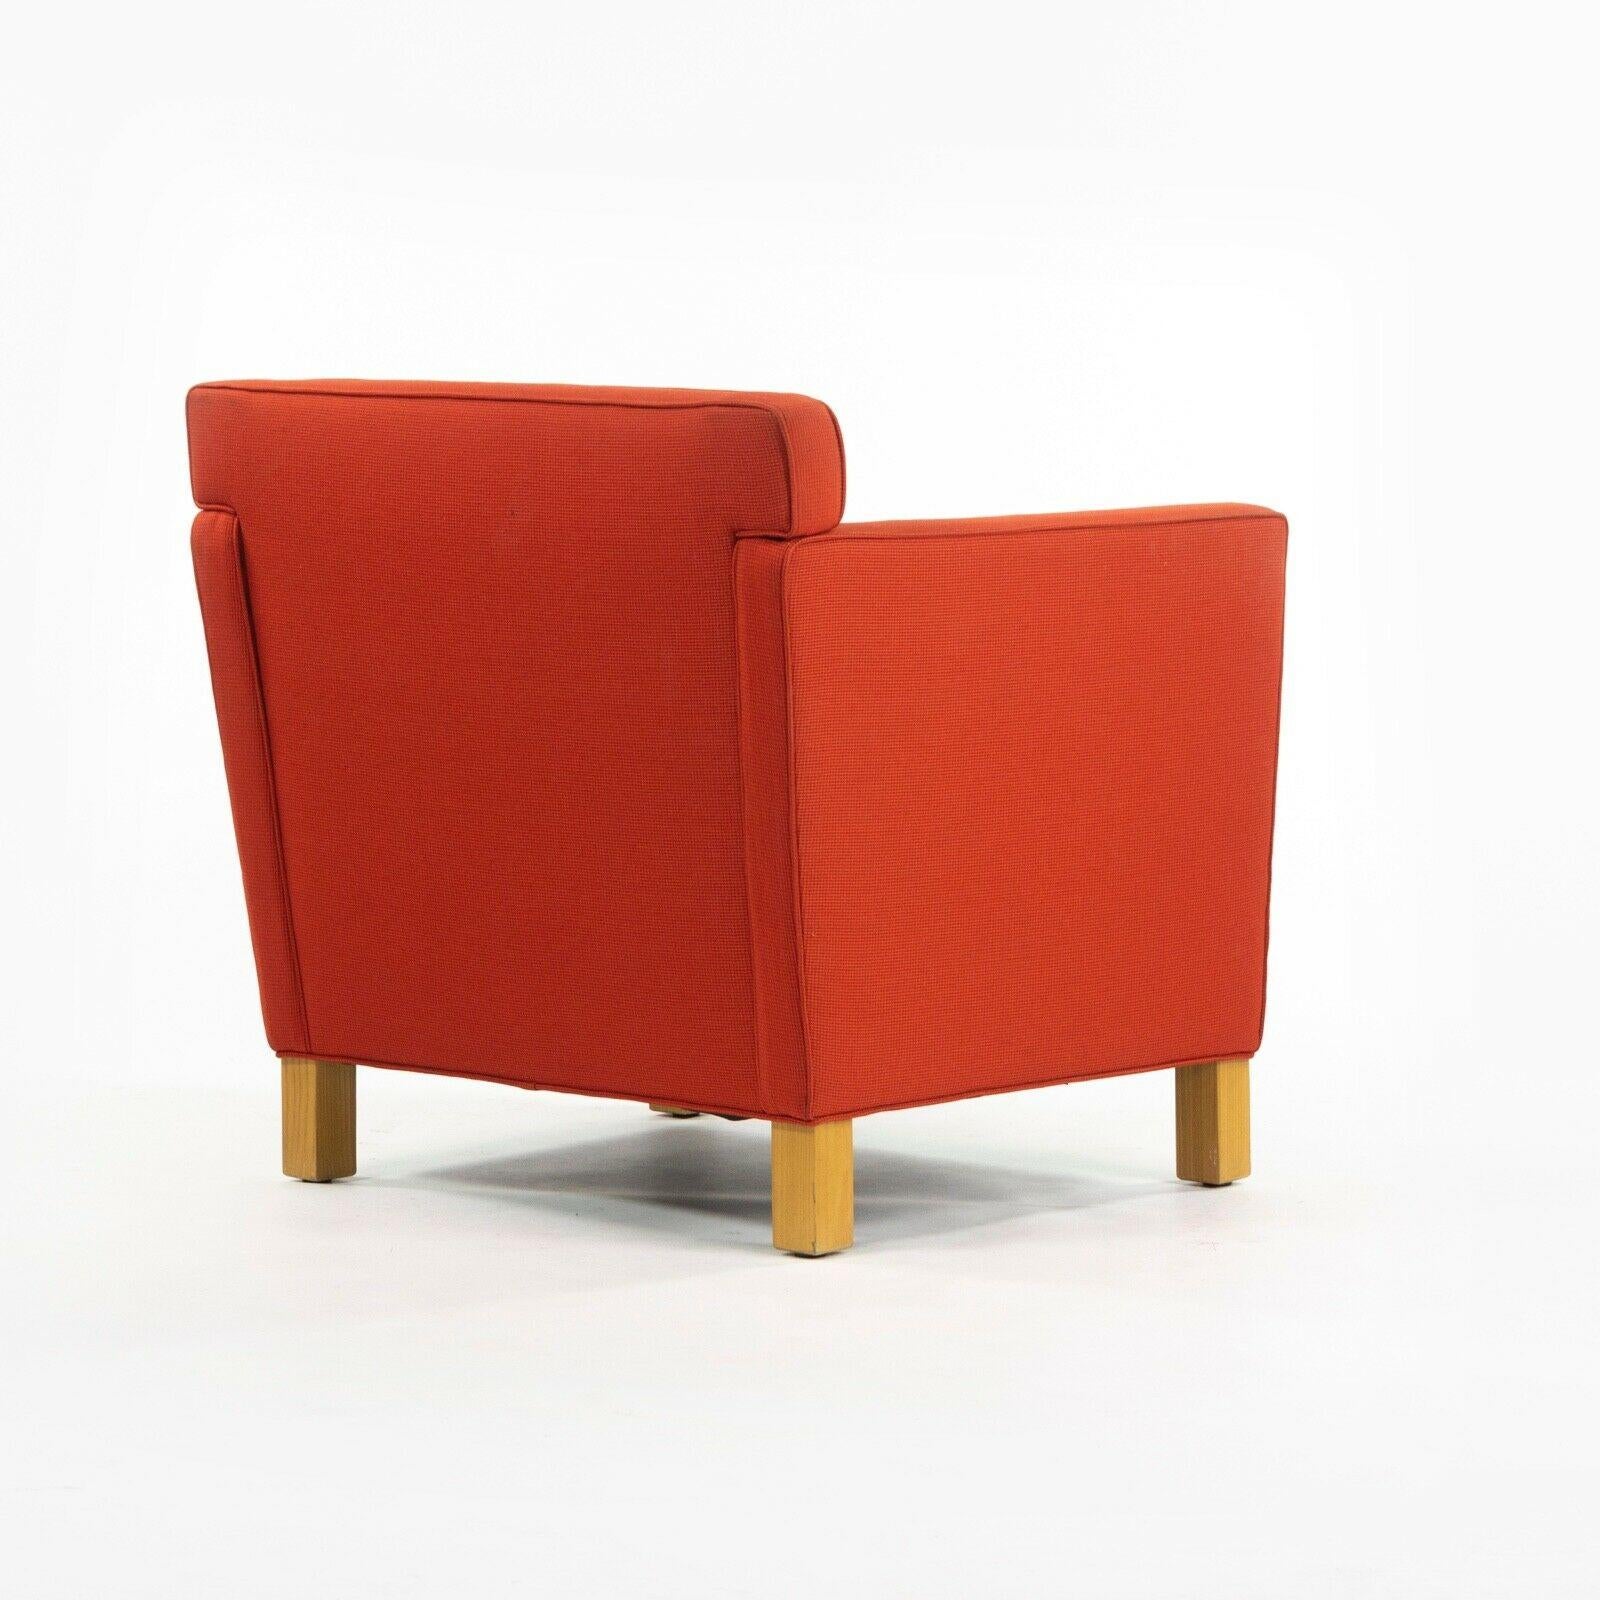 American 2010s Pair Original Knoll Mies Van Der Rohe Krefeld Lounge Chair Orange Fabric